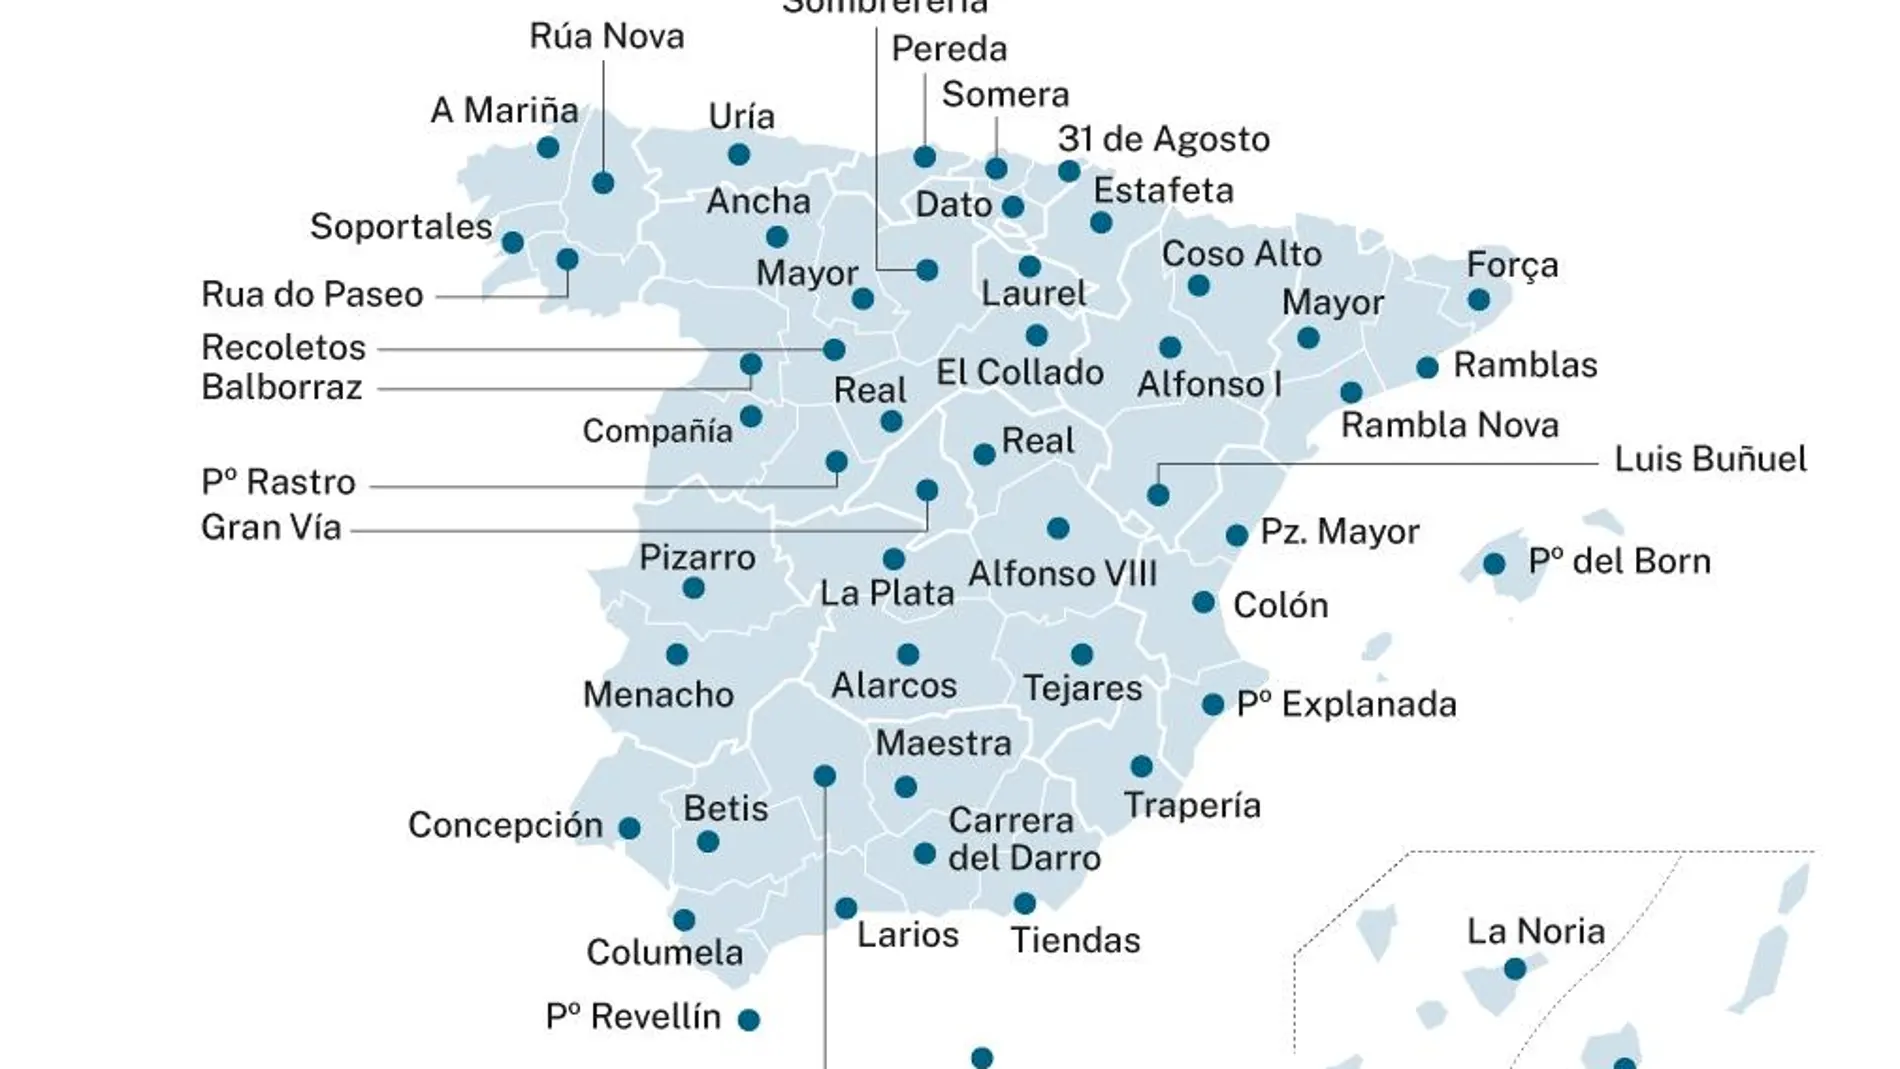 La calle más emblemática de las capitales de provincia españolas